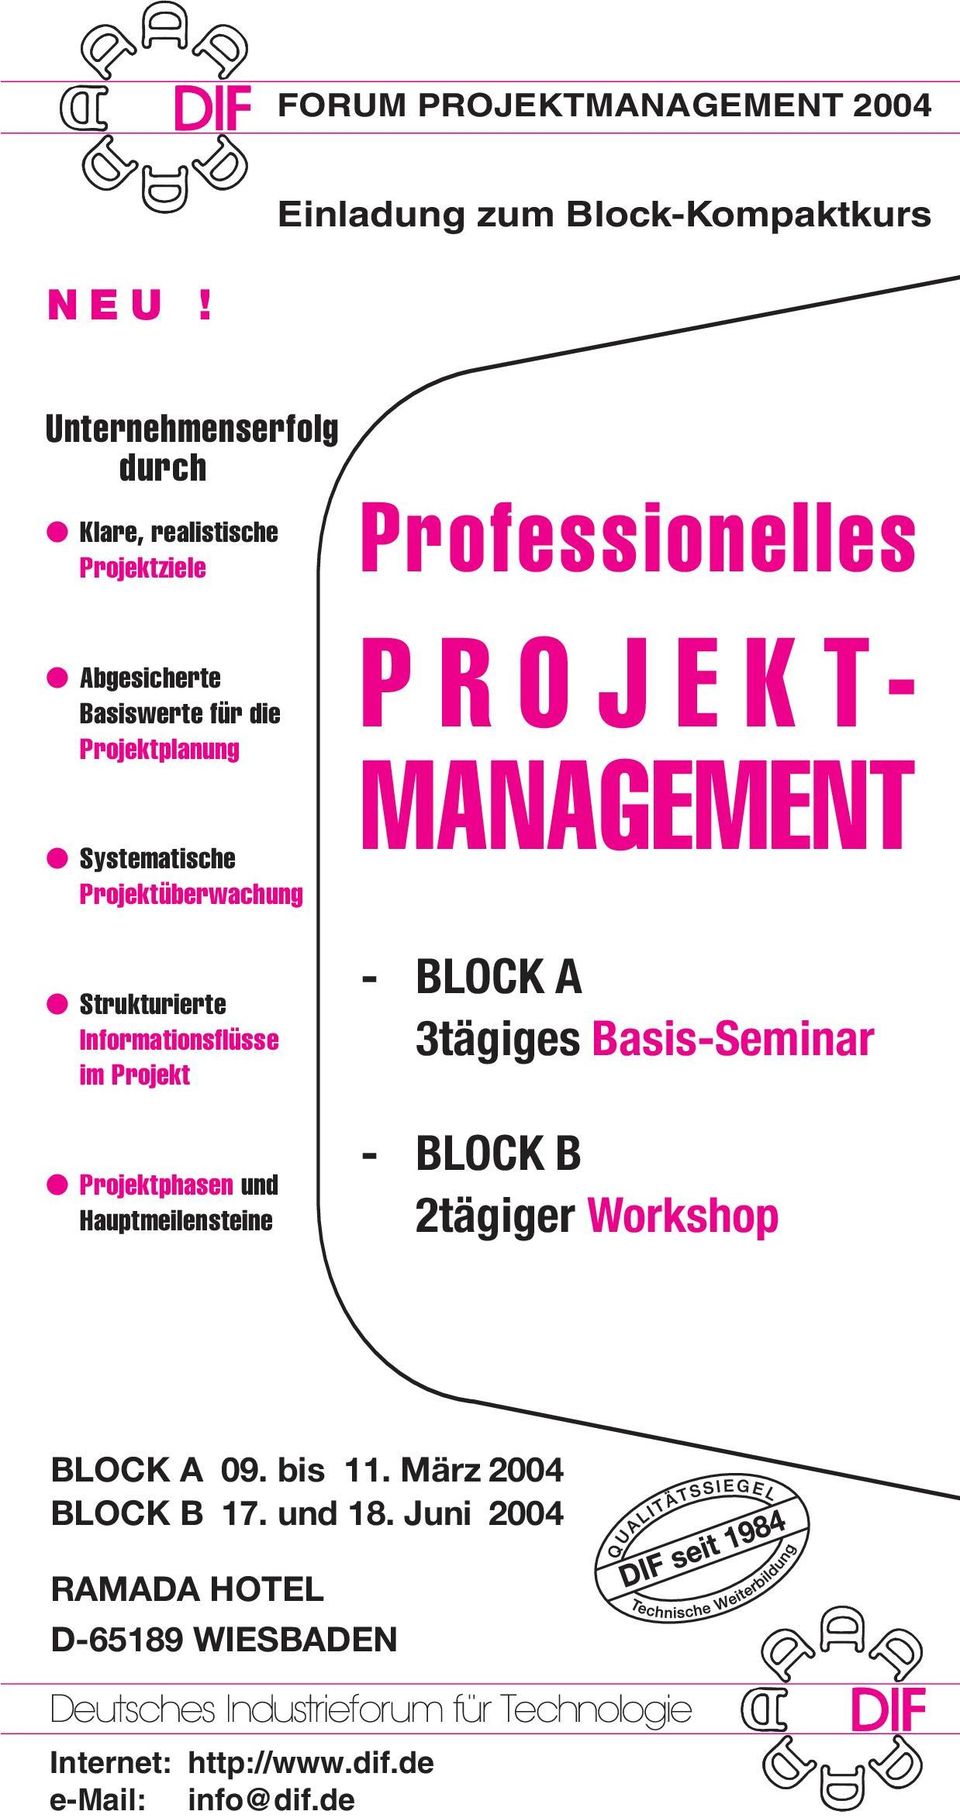 Projektüberwachung Strukturierte Informationsflüsse im Projekt Projektphasen und Hauptmeilensteine Professionelles PROJEKT-